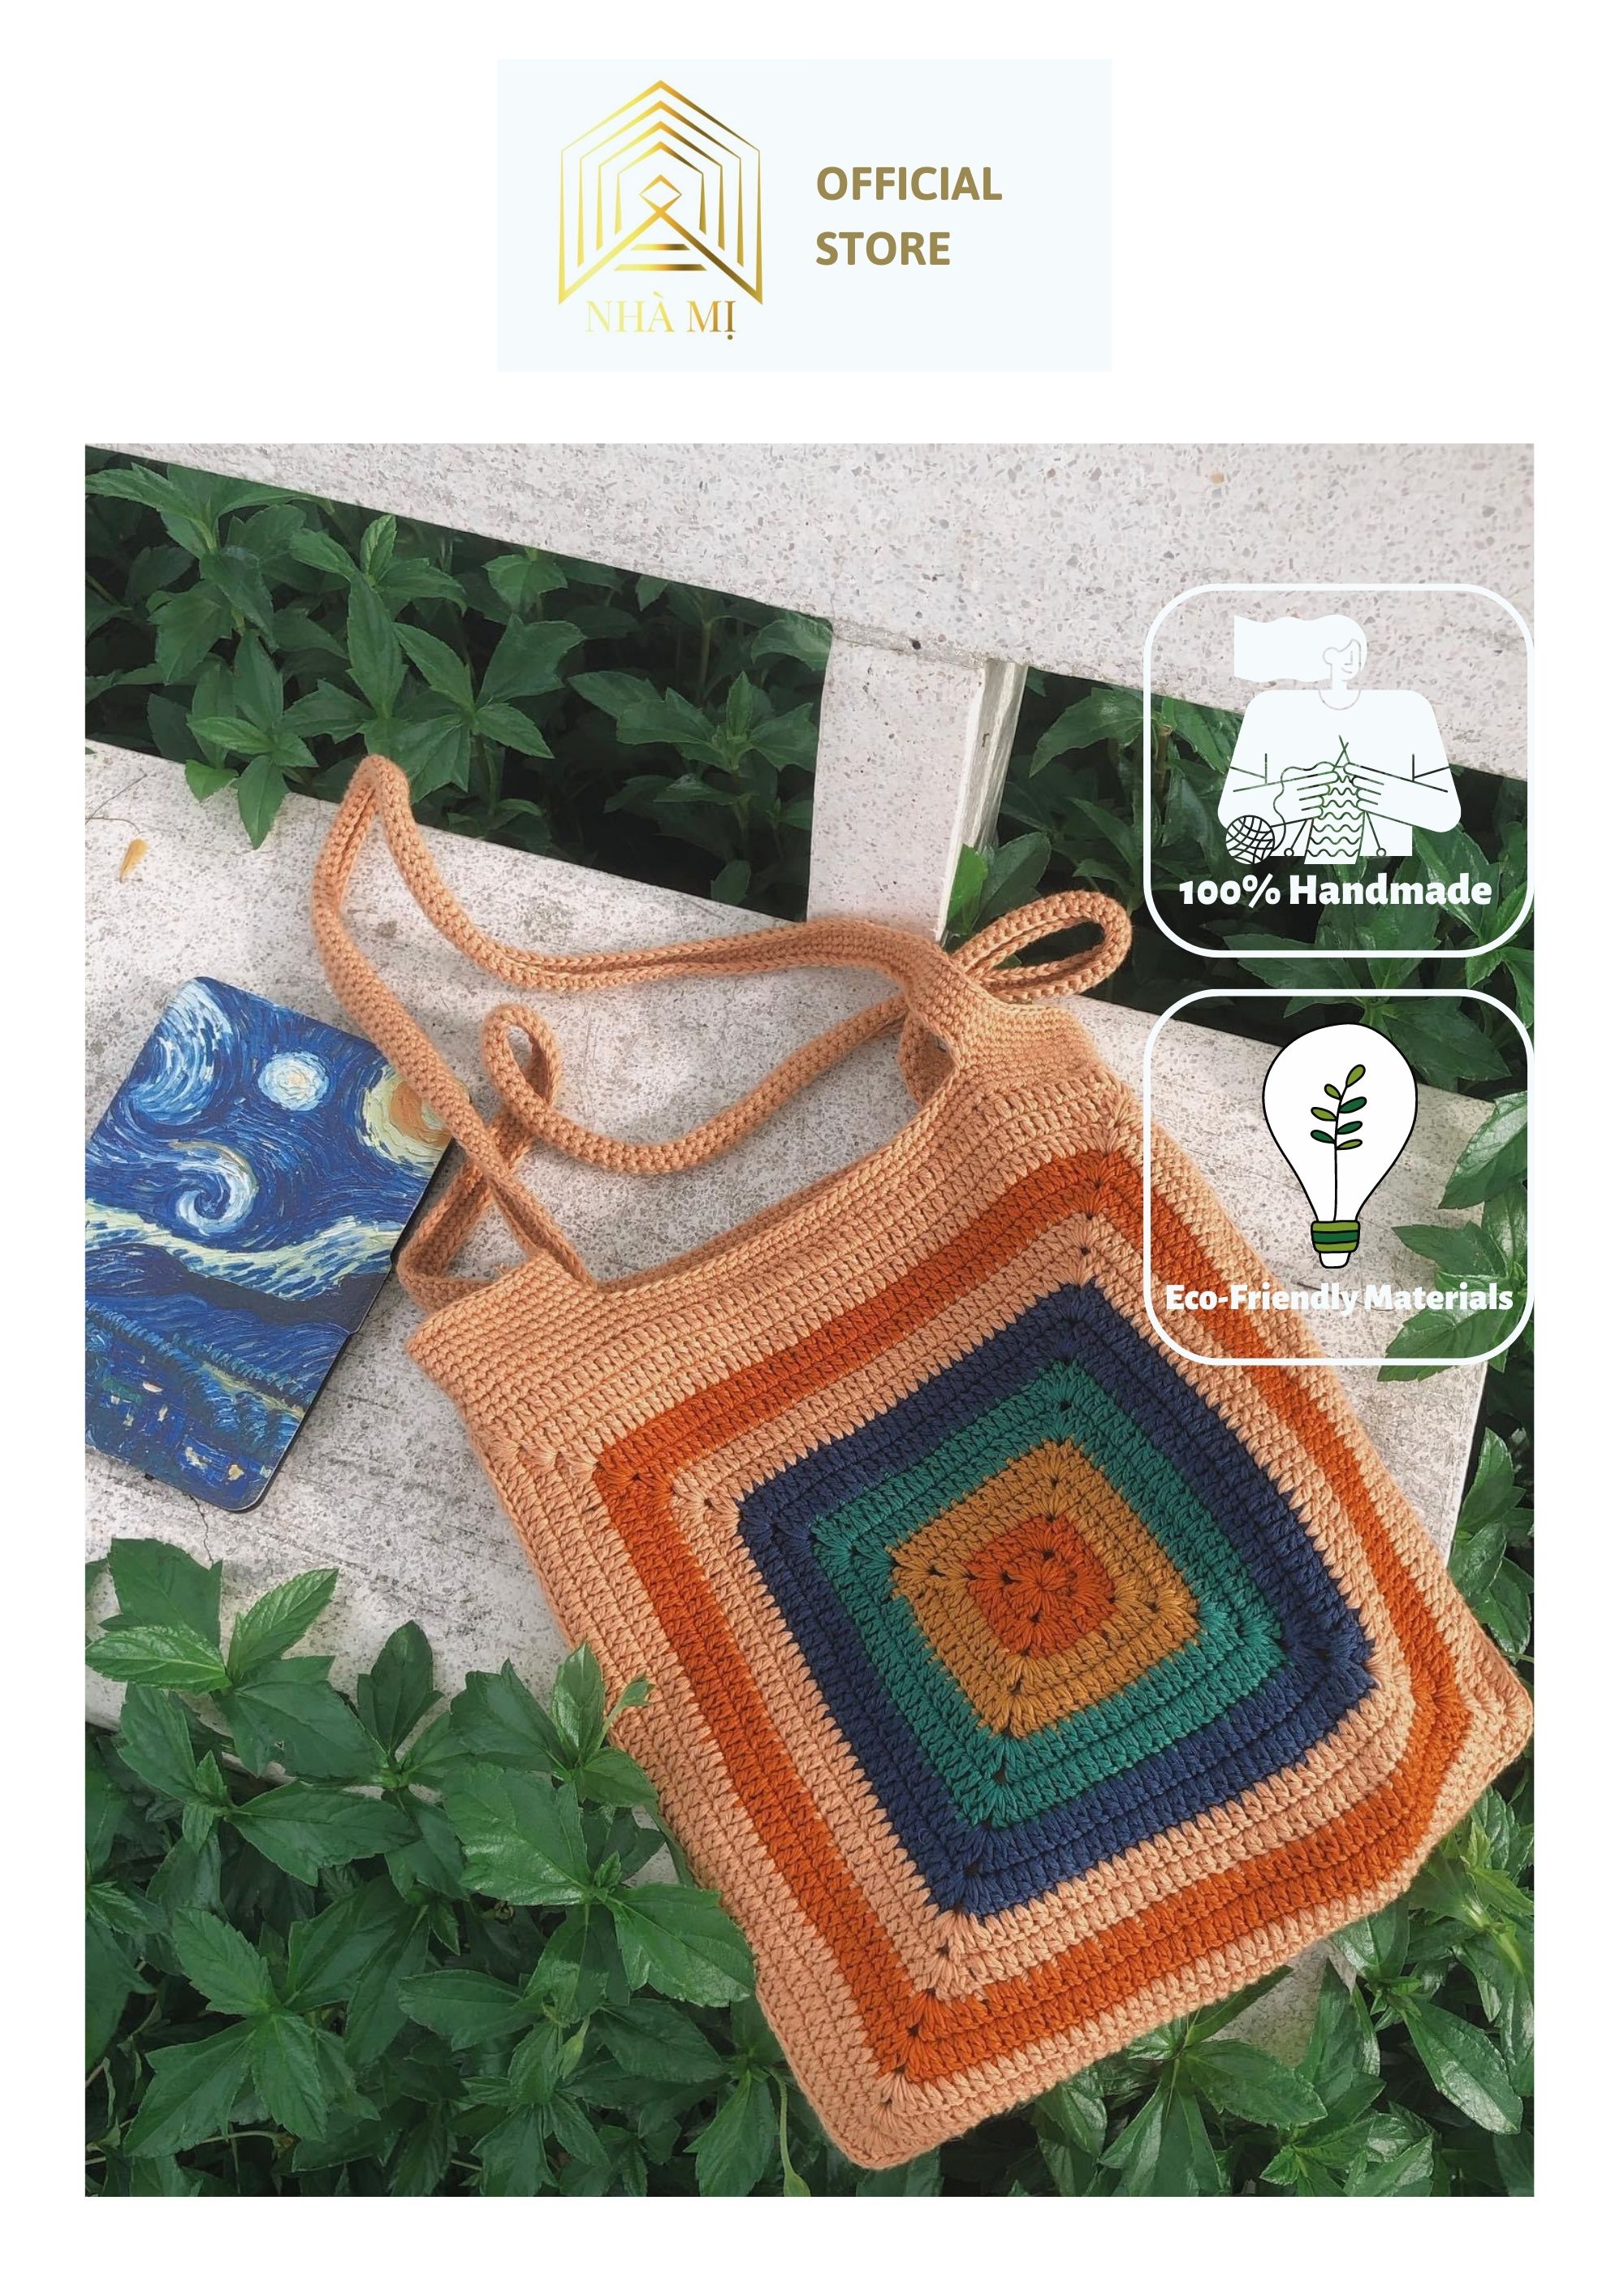 Túi handmade đan móc thủ công NHÀ MỊ - Morocco bag